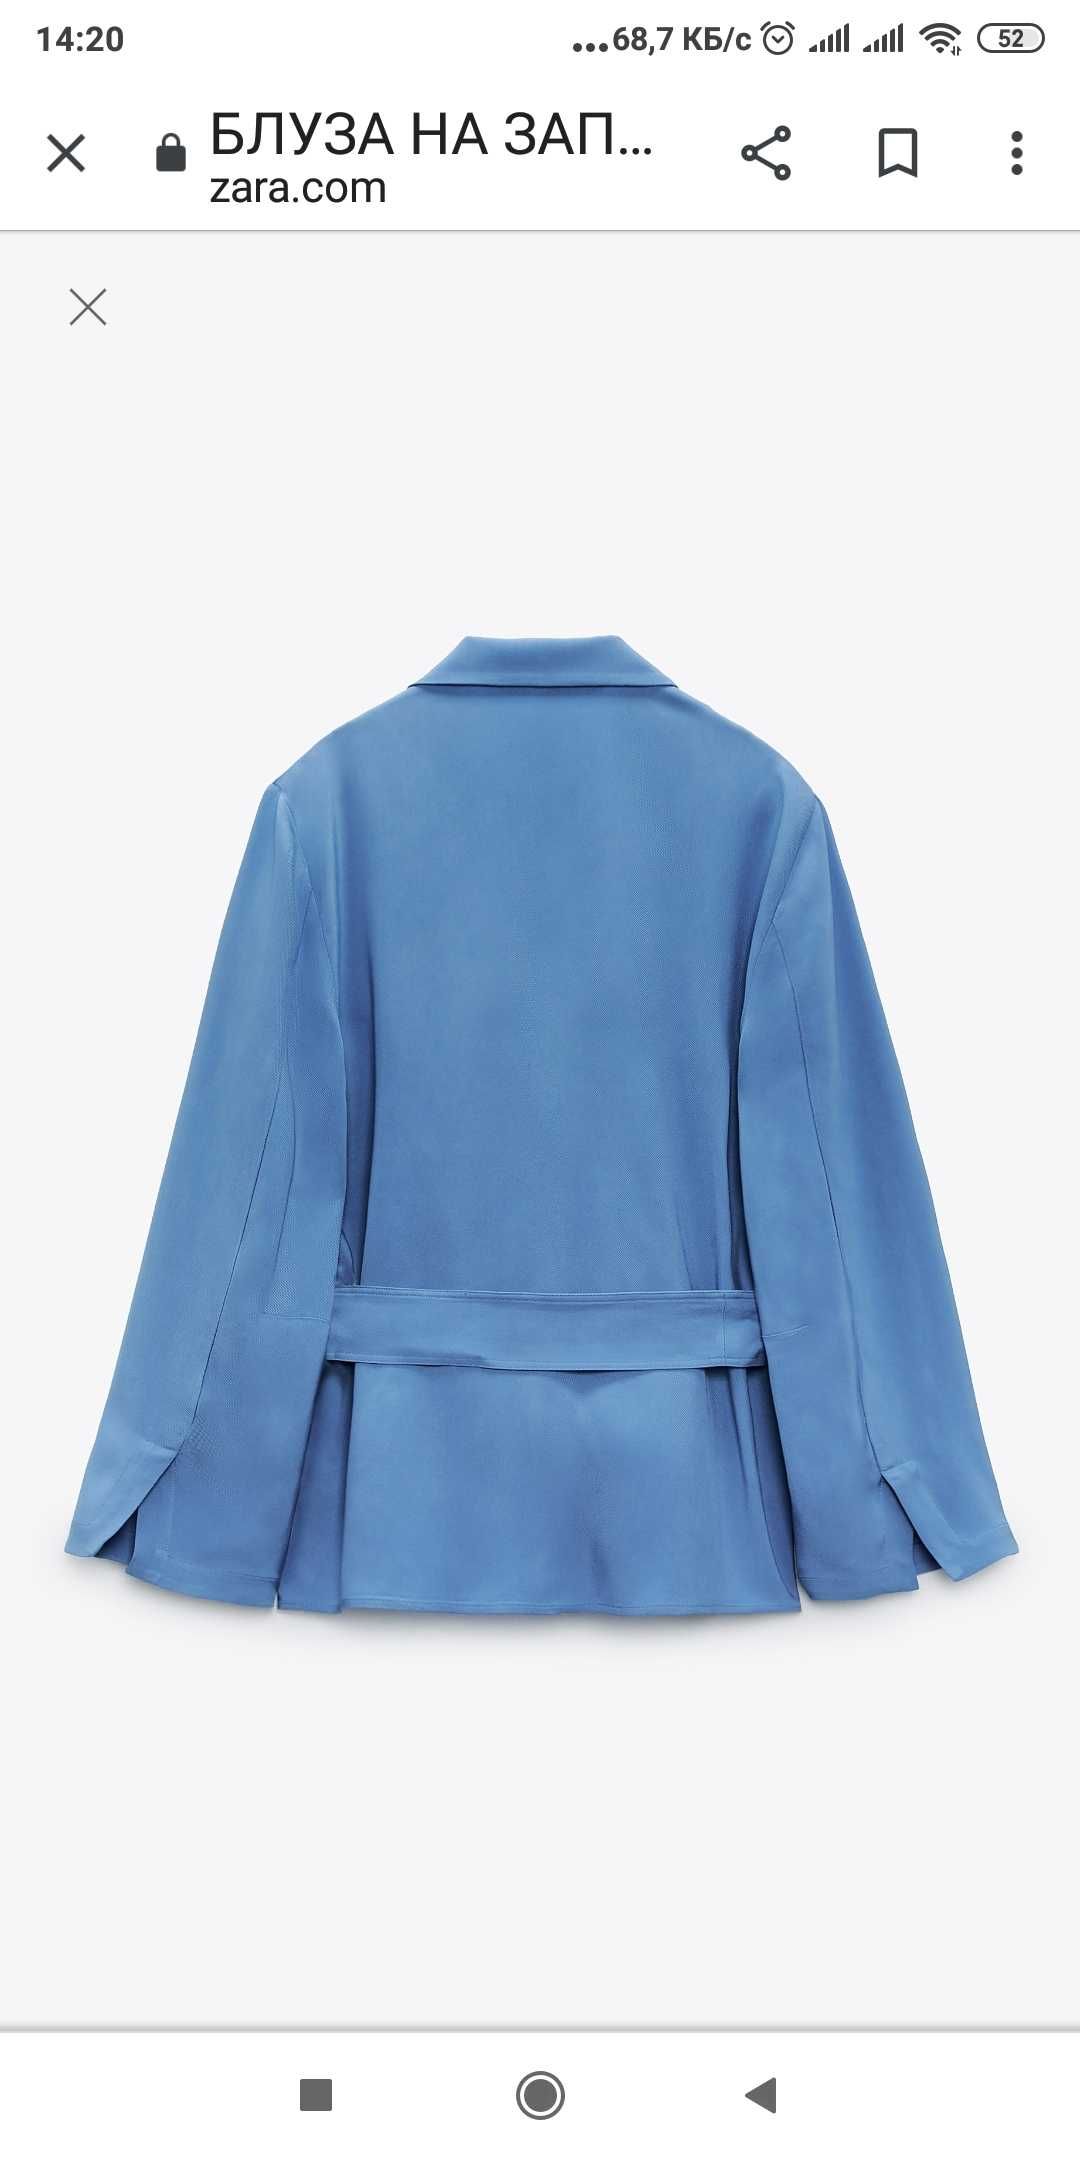 Новый пиджак, кардиган Zara пижамный стиль размер S--L